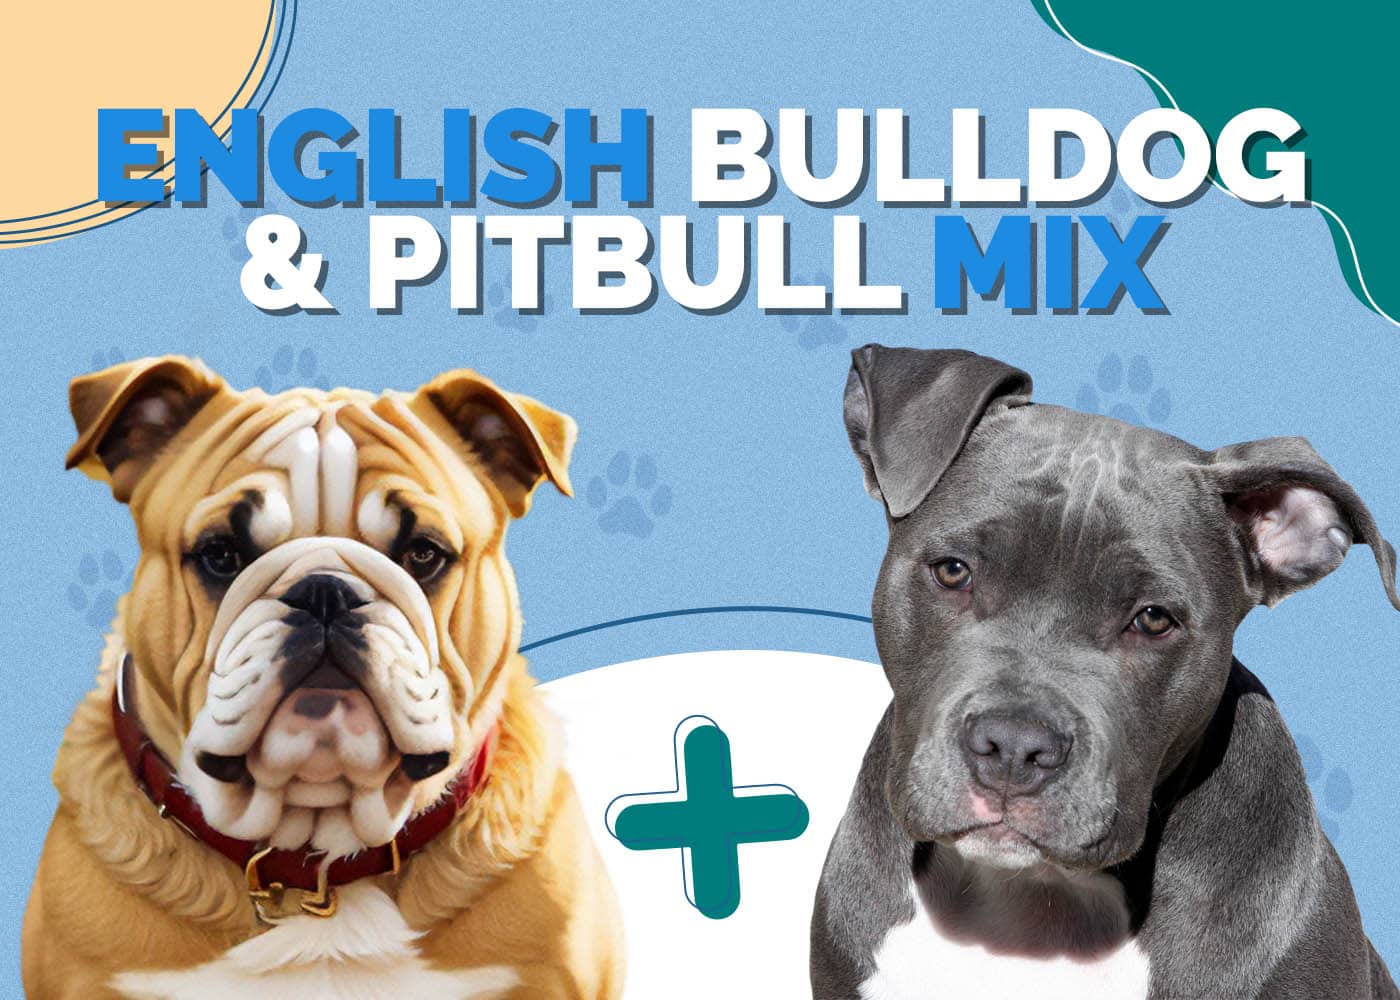 English Bulldog & Pitbull Mix